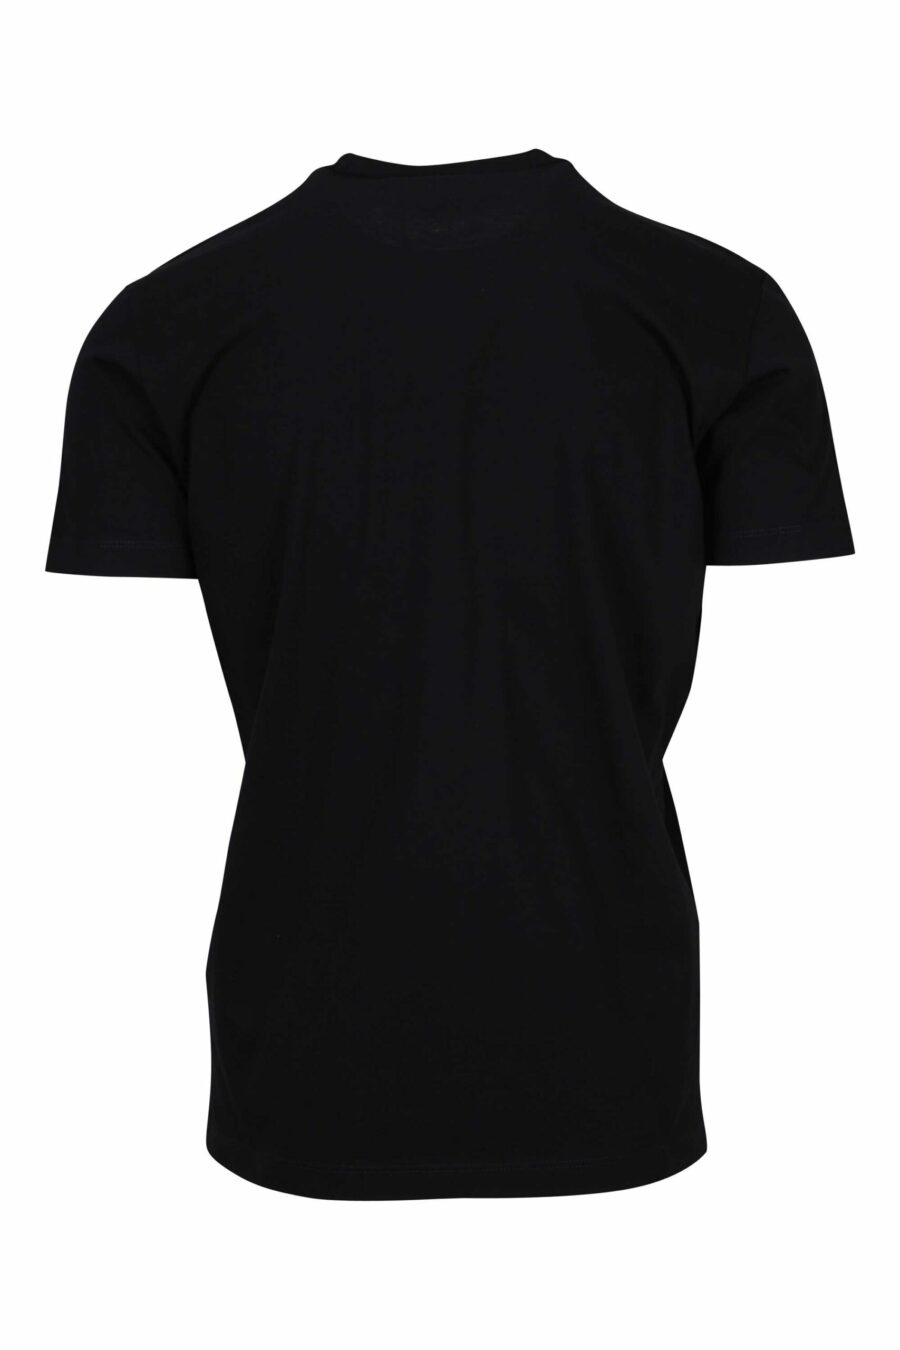 T-shirt preta com bandeira maxilogo "D2" - 8054148332518 1 à escala